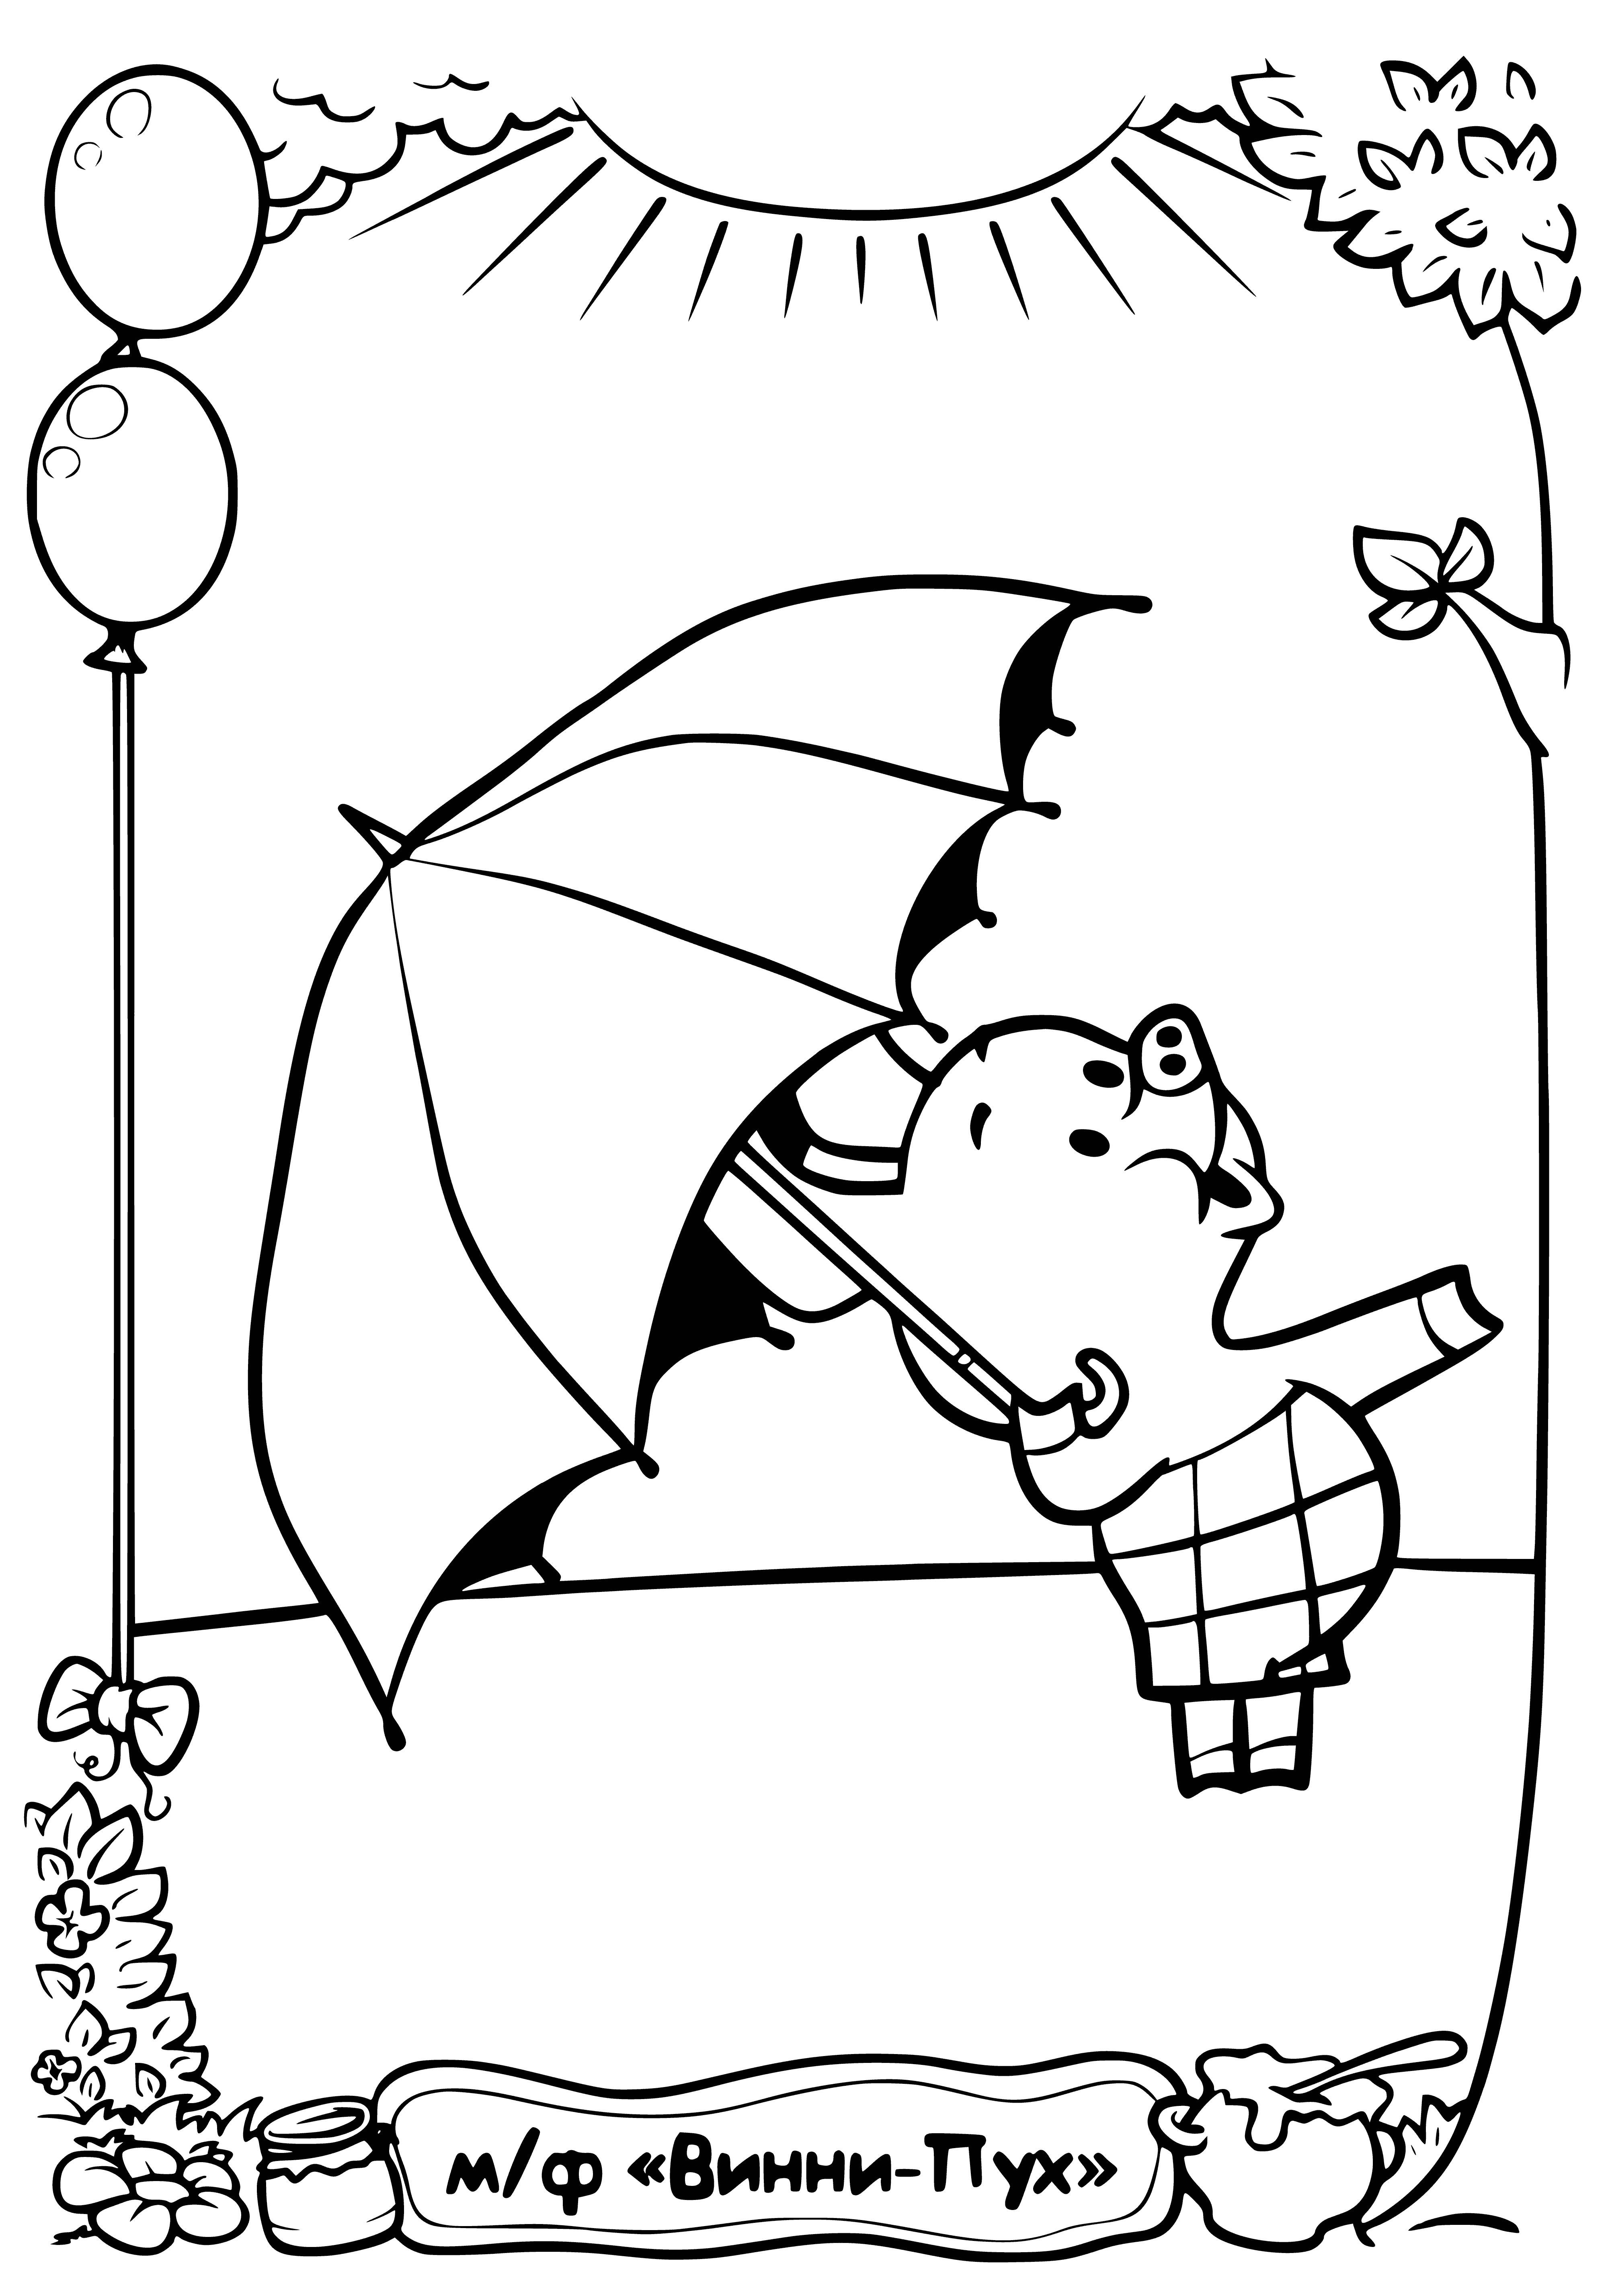 coloring page: Winnie & Piglet standing under umbrella, Winnie holds it & Piglet's hand; Piglet looks up at Winnie.